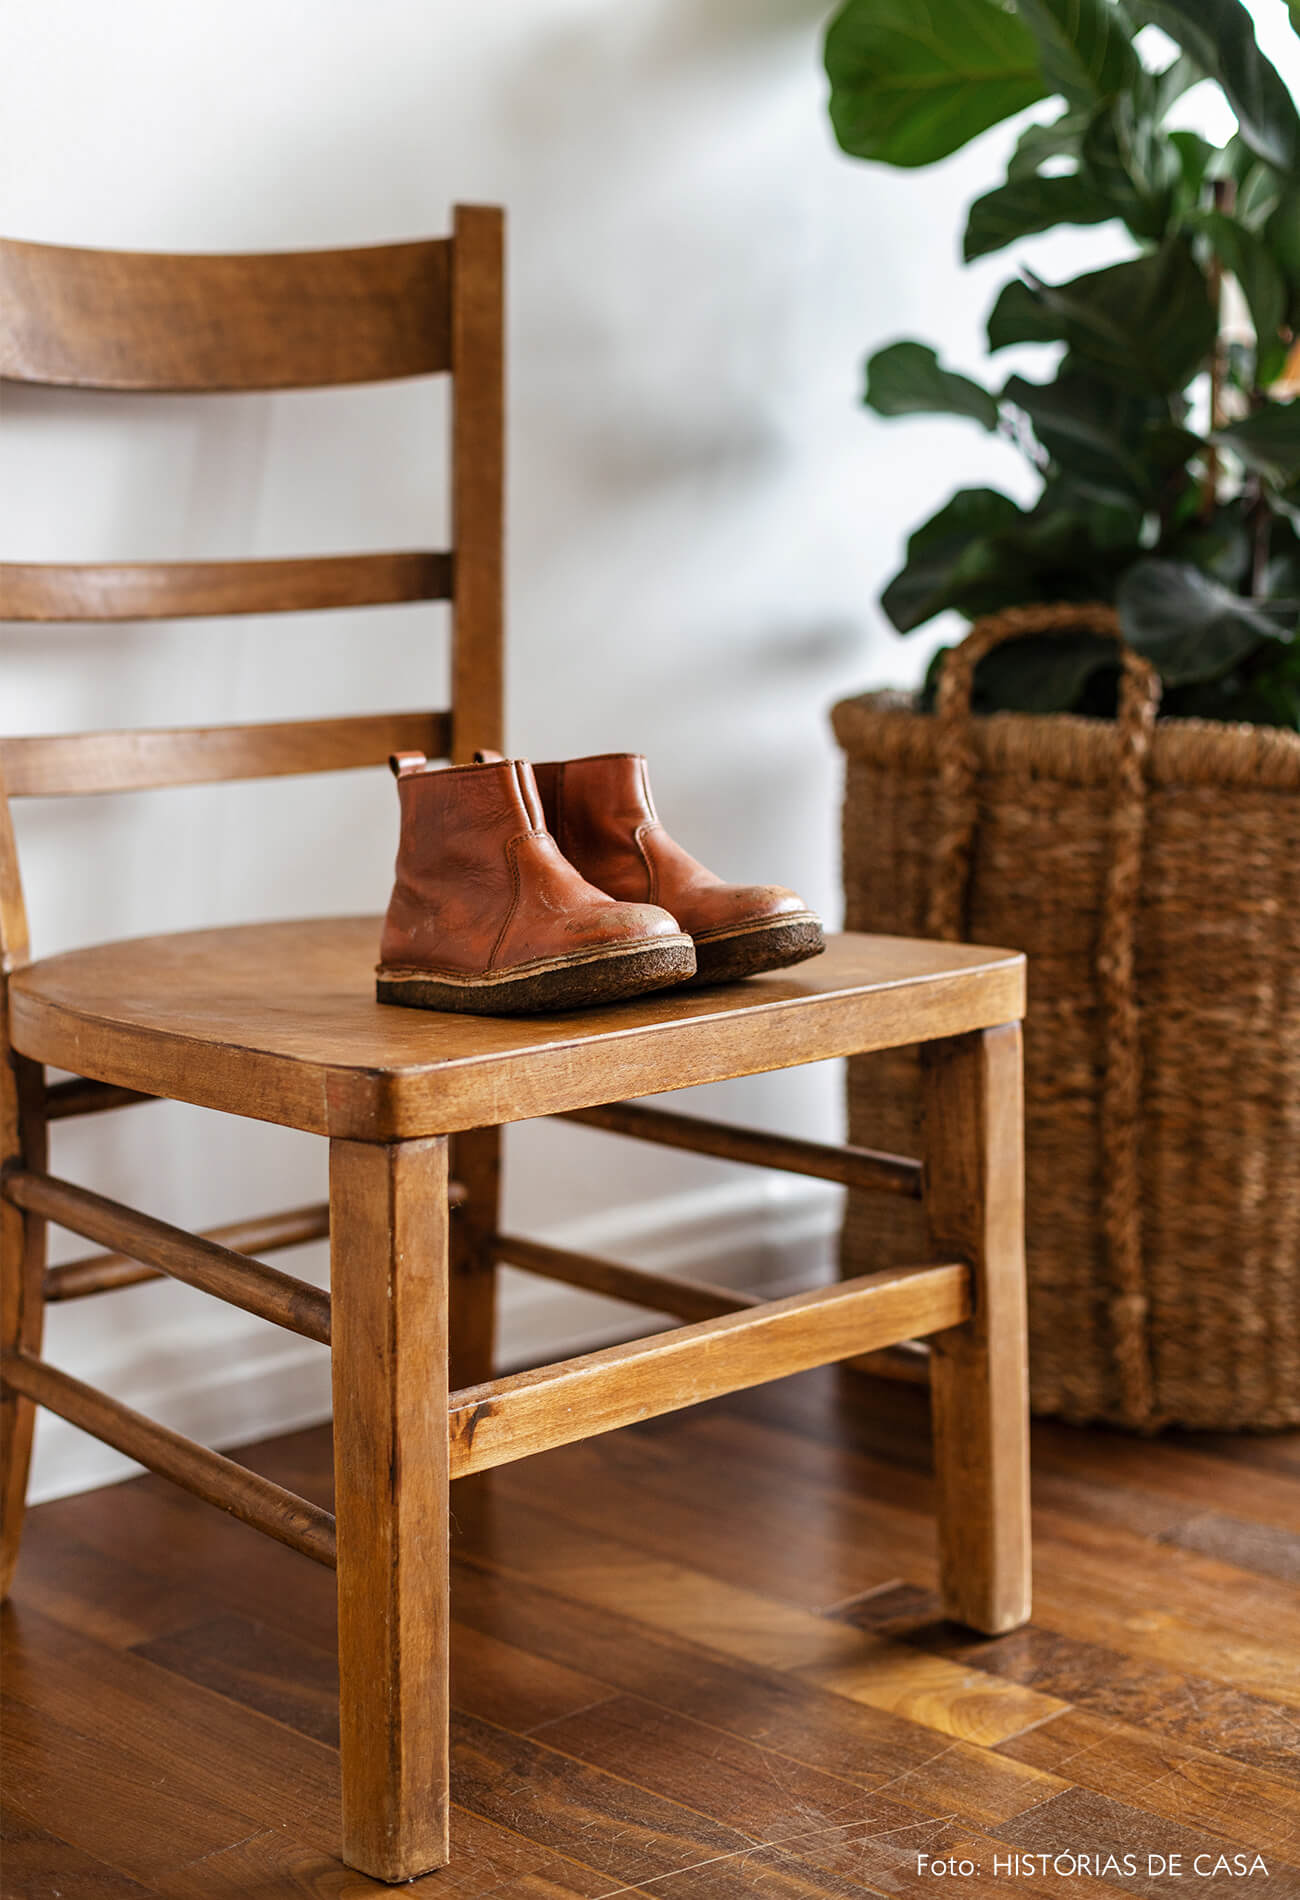 vanessa-decoração-ap-17-detalhe-sapato-em-cadeira-de-madeira